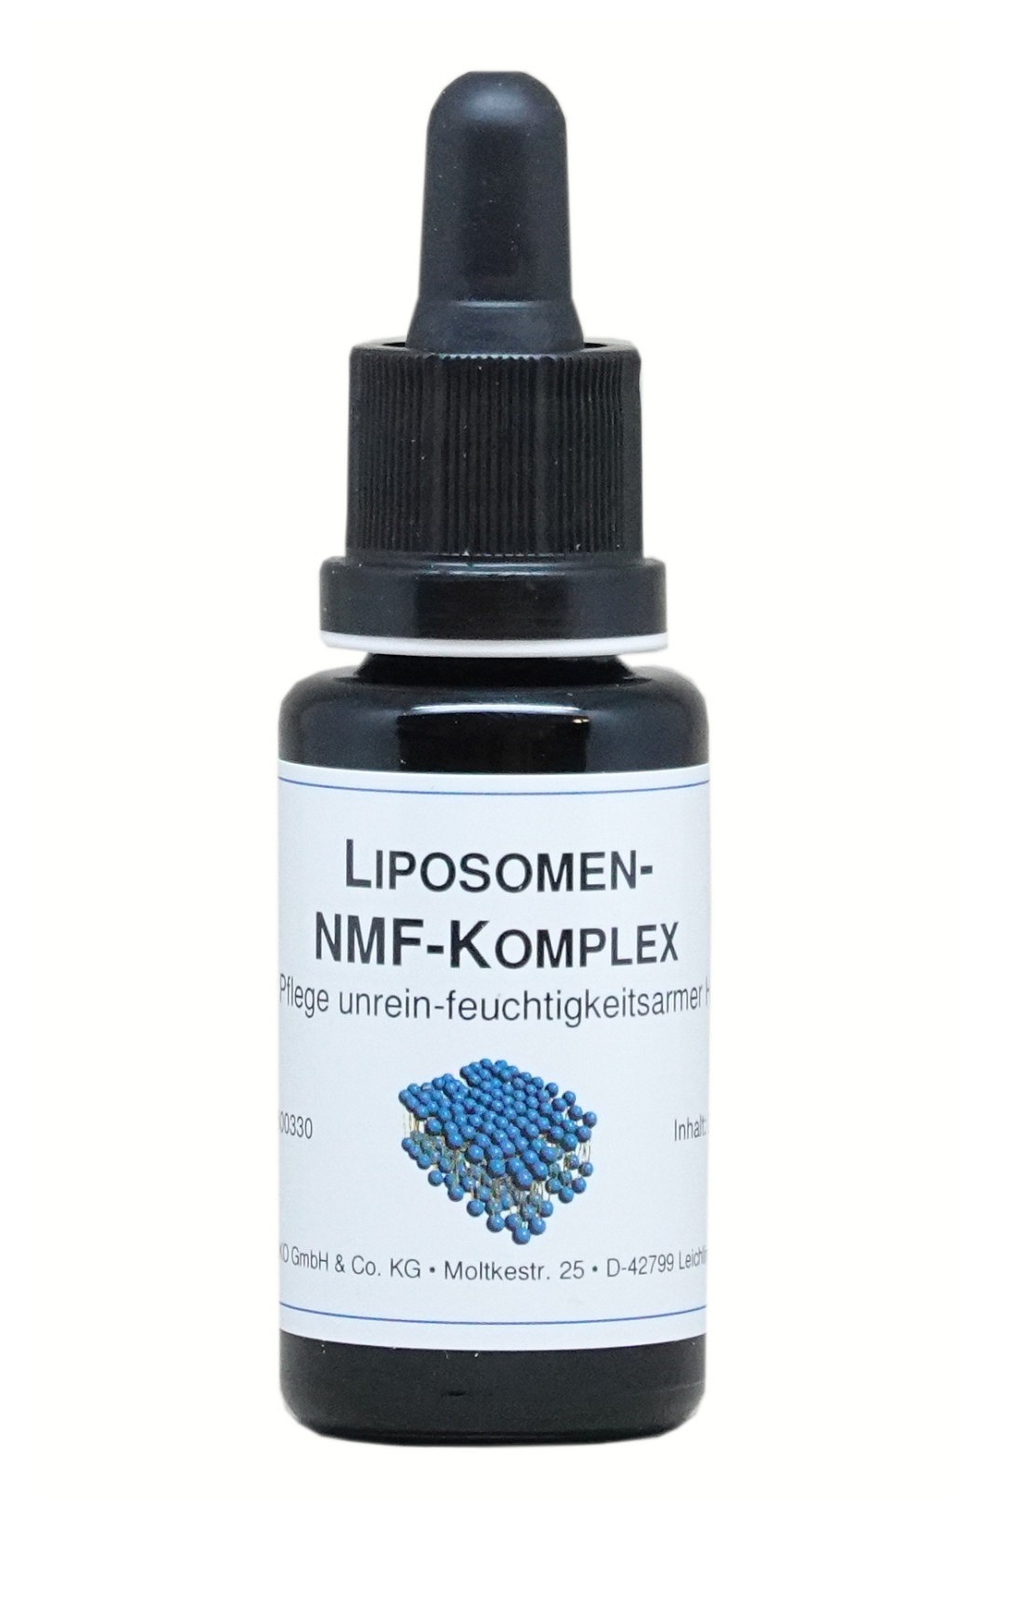 Liposomen-NMF-Komplex 